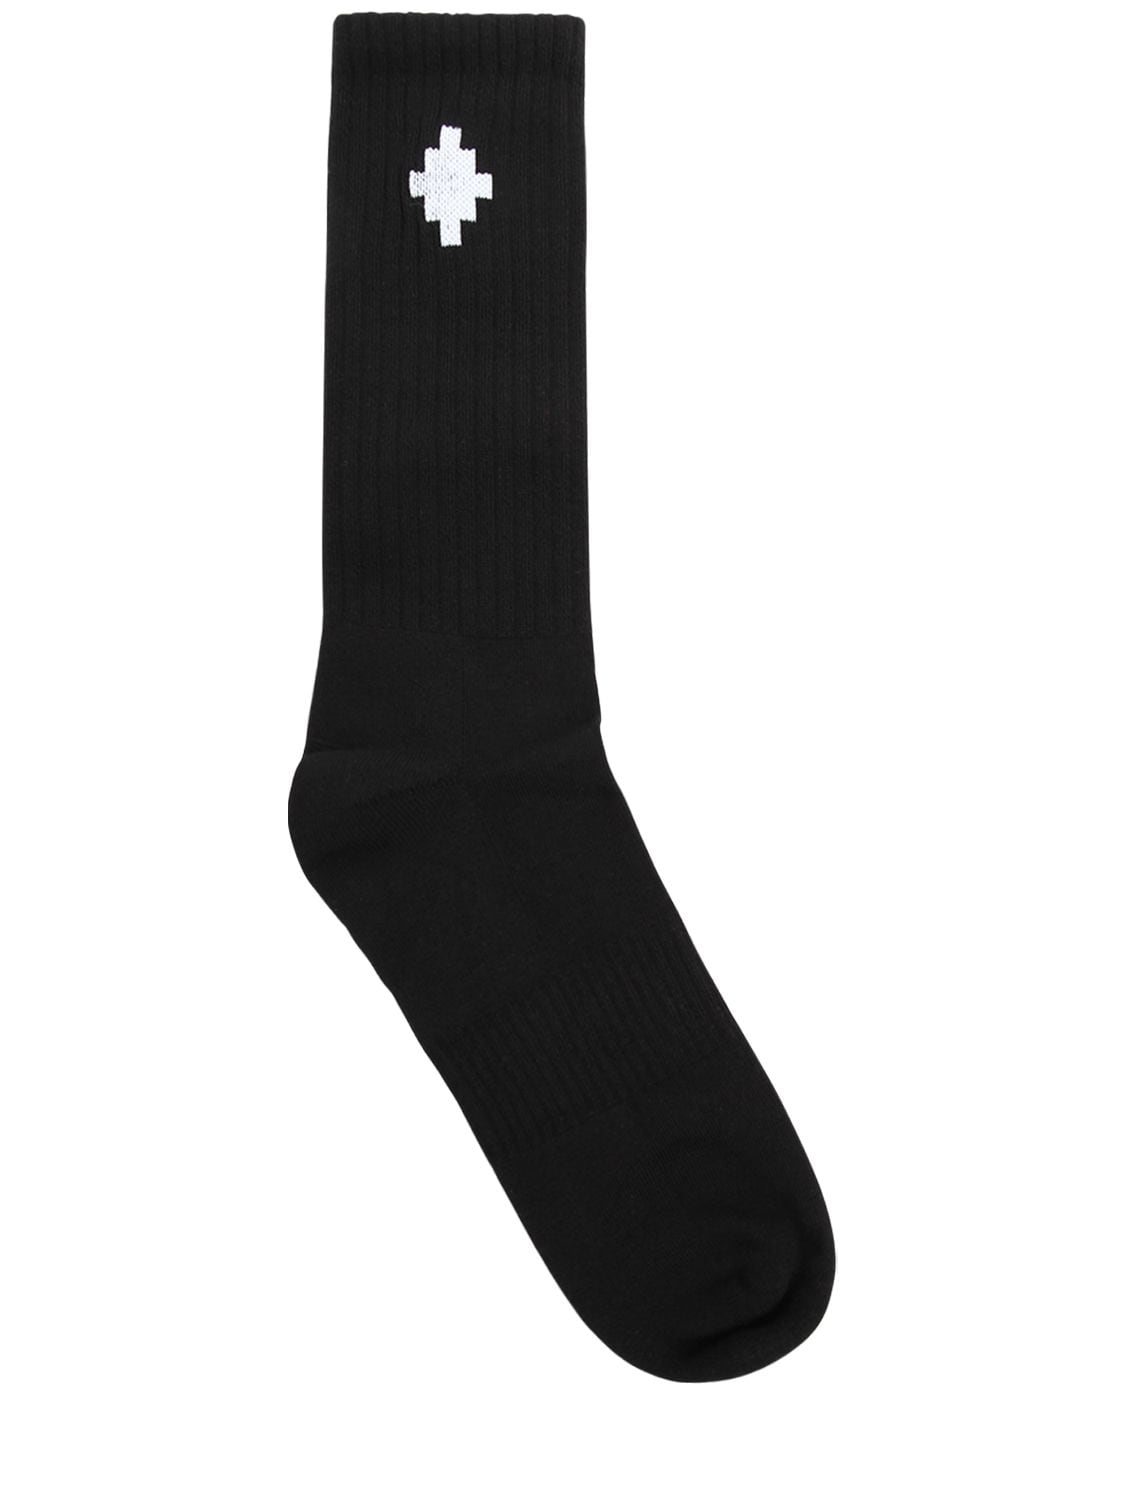 Logo Cross Cotton Blend Mid Length Socks